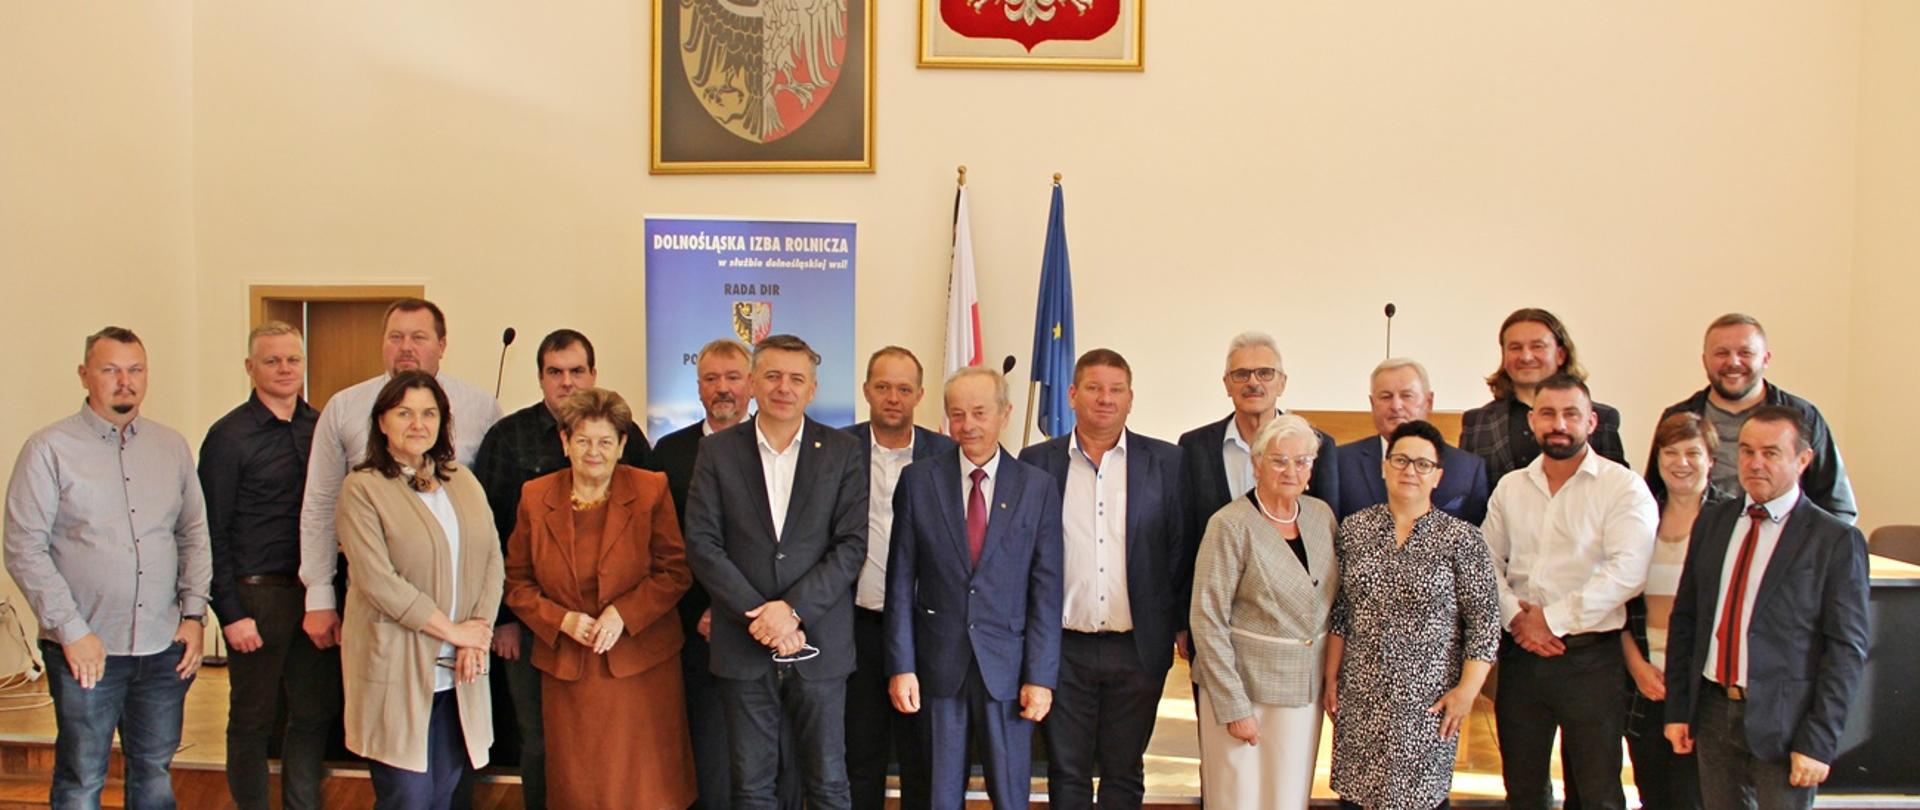 Do wspólnego zdjęcia pozują członkowie Rady Powiatowej DIR z przedstawicielami Zarządu Powiatu Oleśnickiego